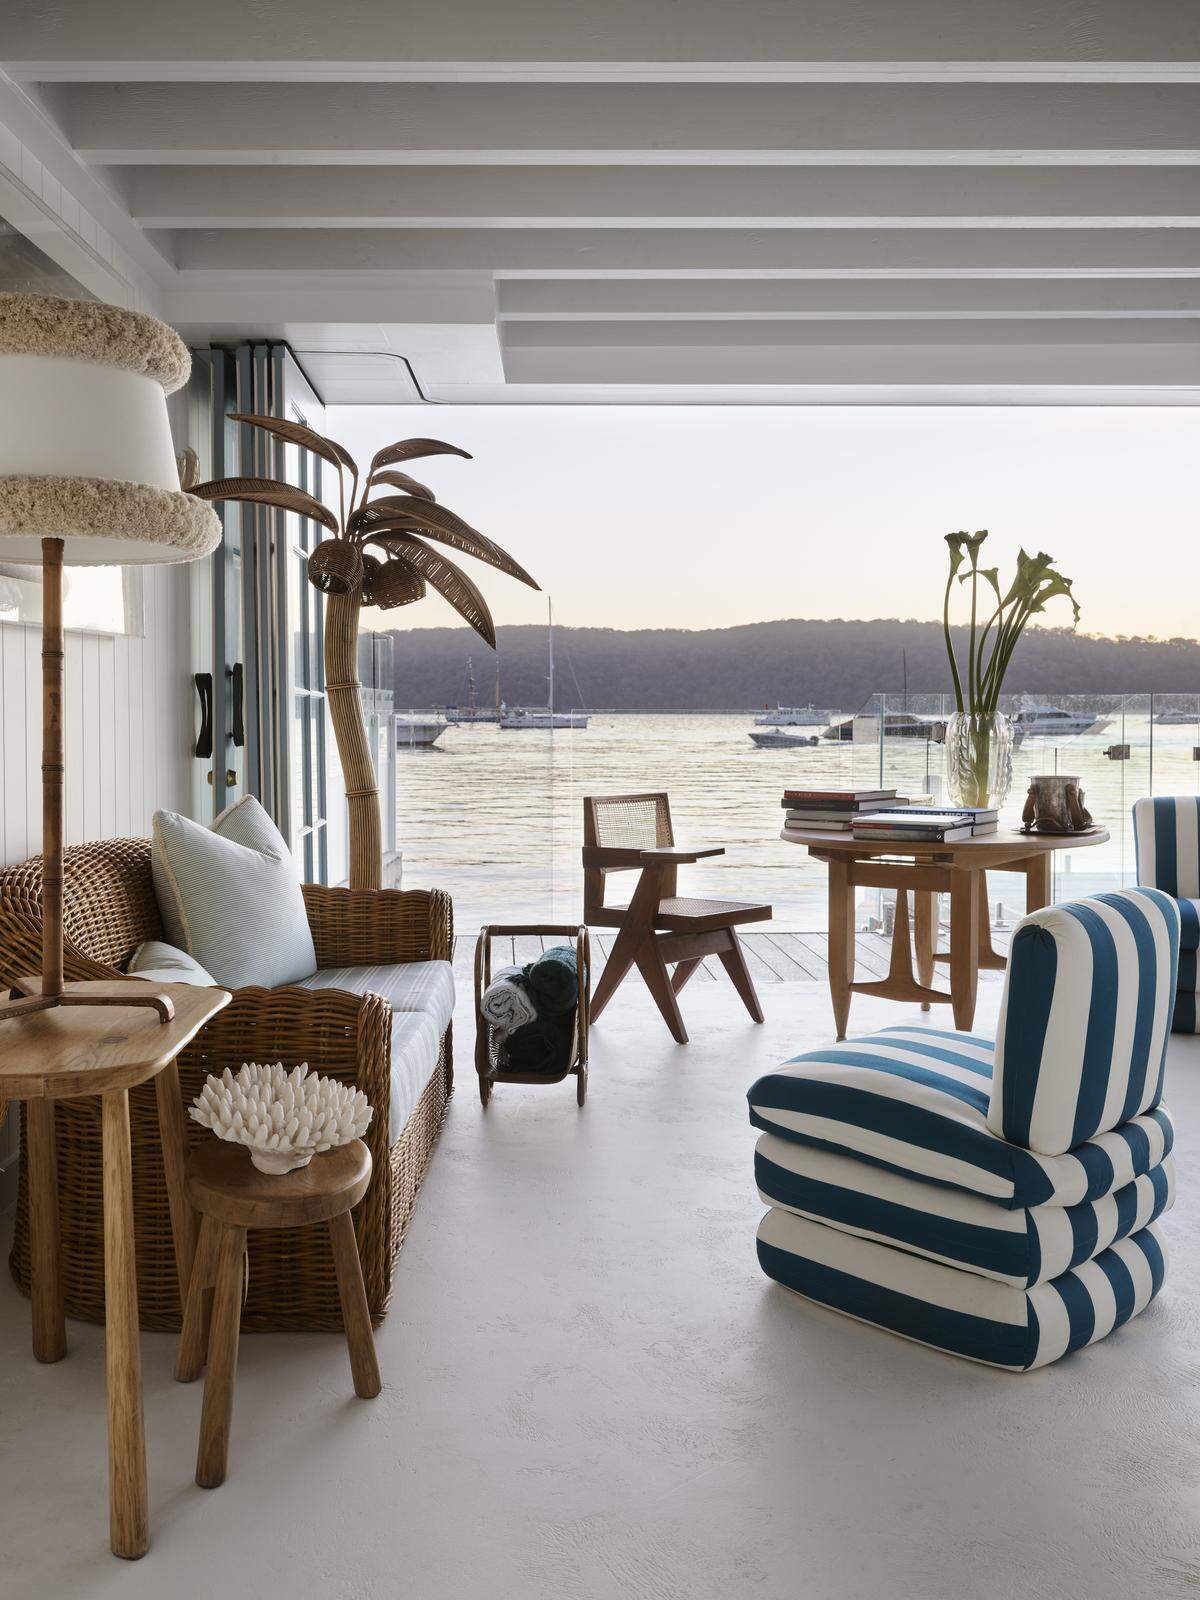 . . . befindet sich dieses Bootshaus am Palm Beach in Sydney. Für die Inneneinrichtung zeichnen Tamsin Johnson Interior Design verantwortlich.